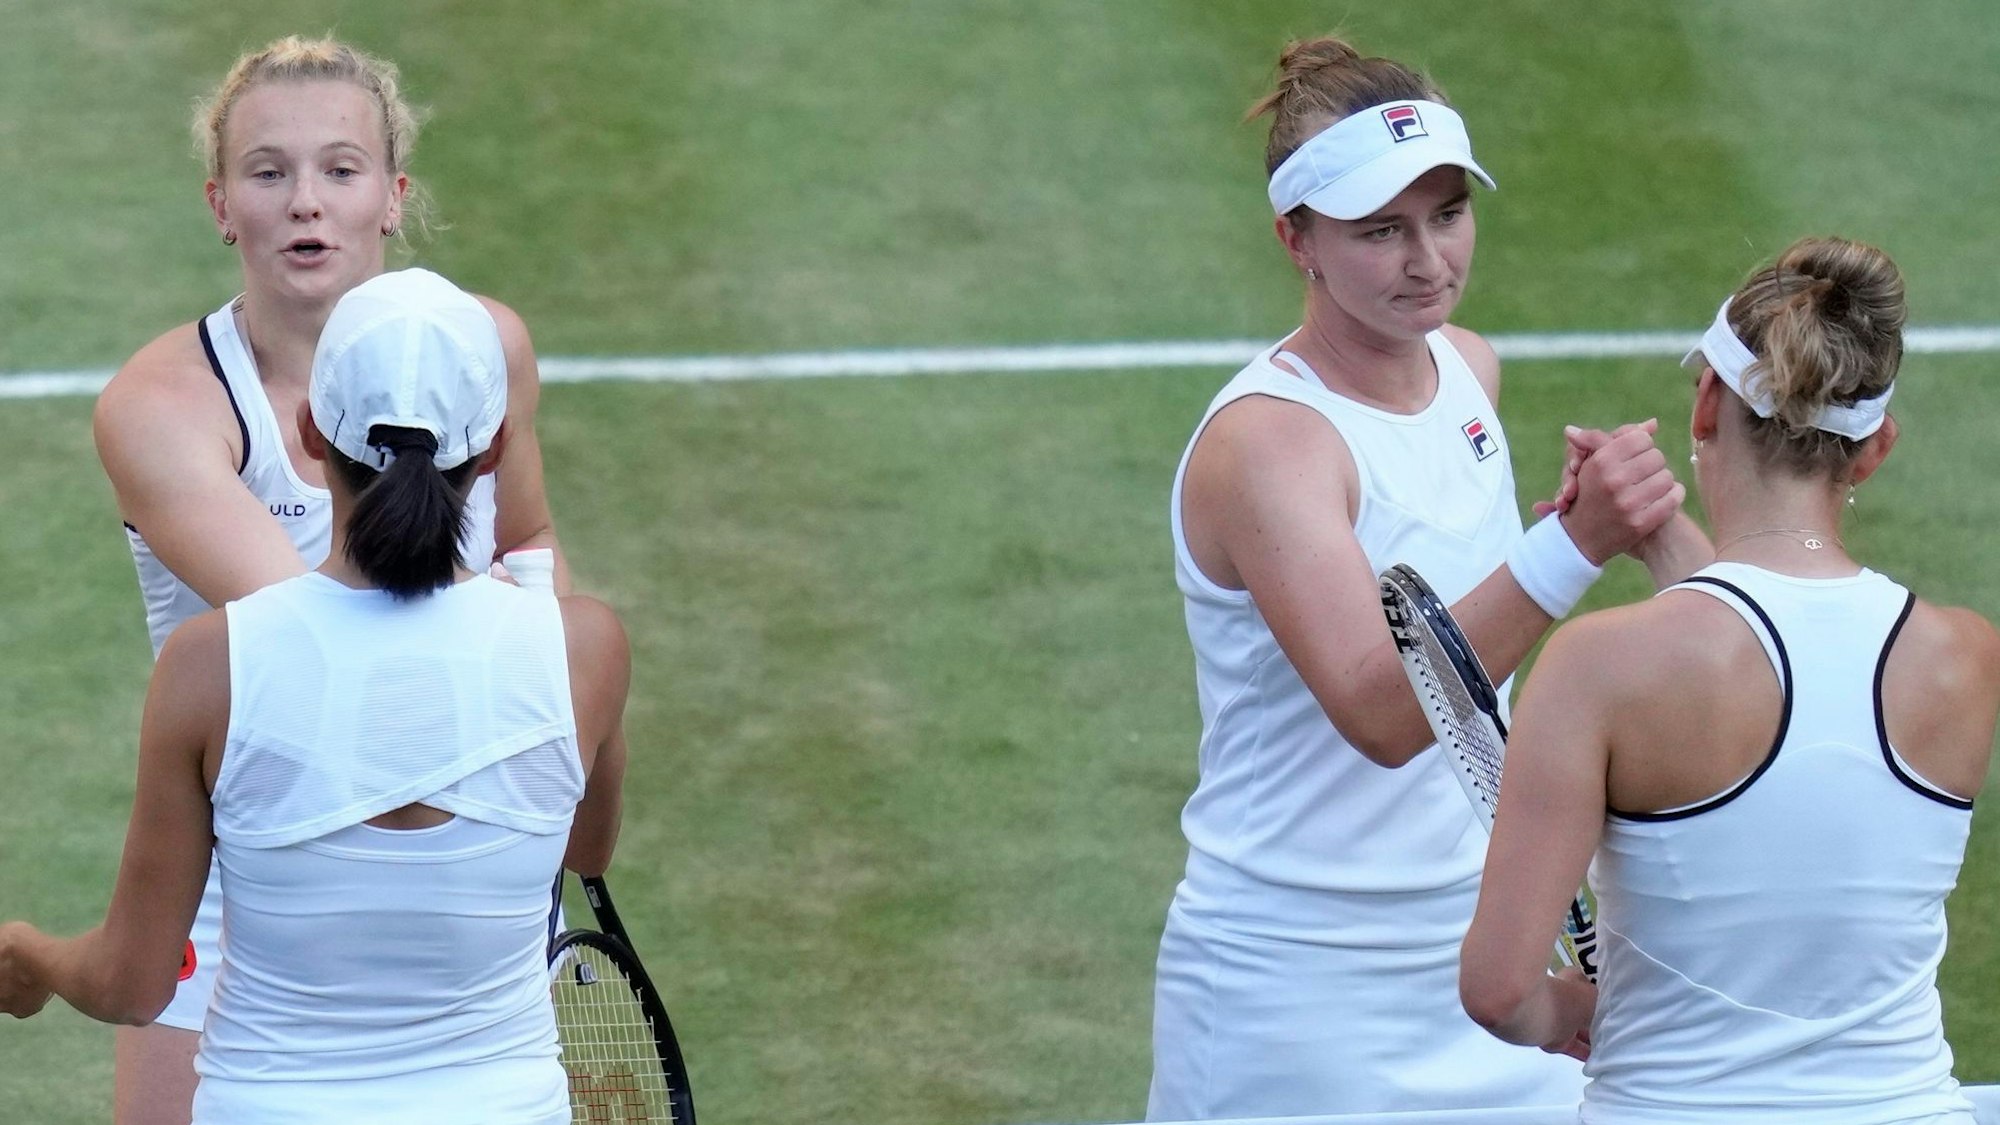 Profi-Spielerinnen beim Tennis-Turnier in Wimbledon